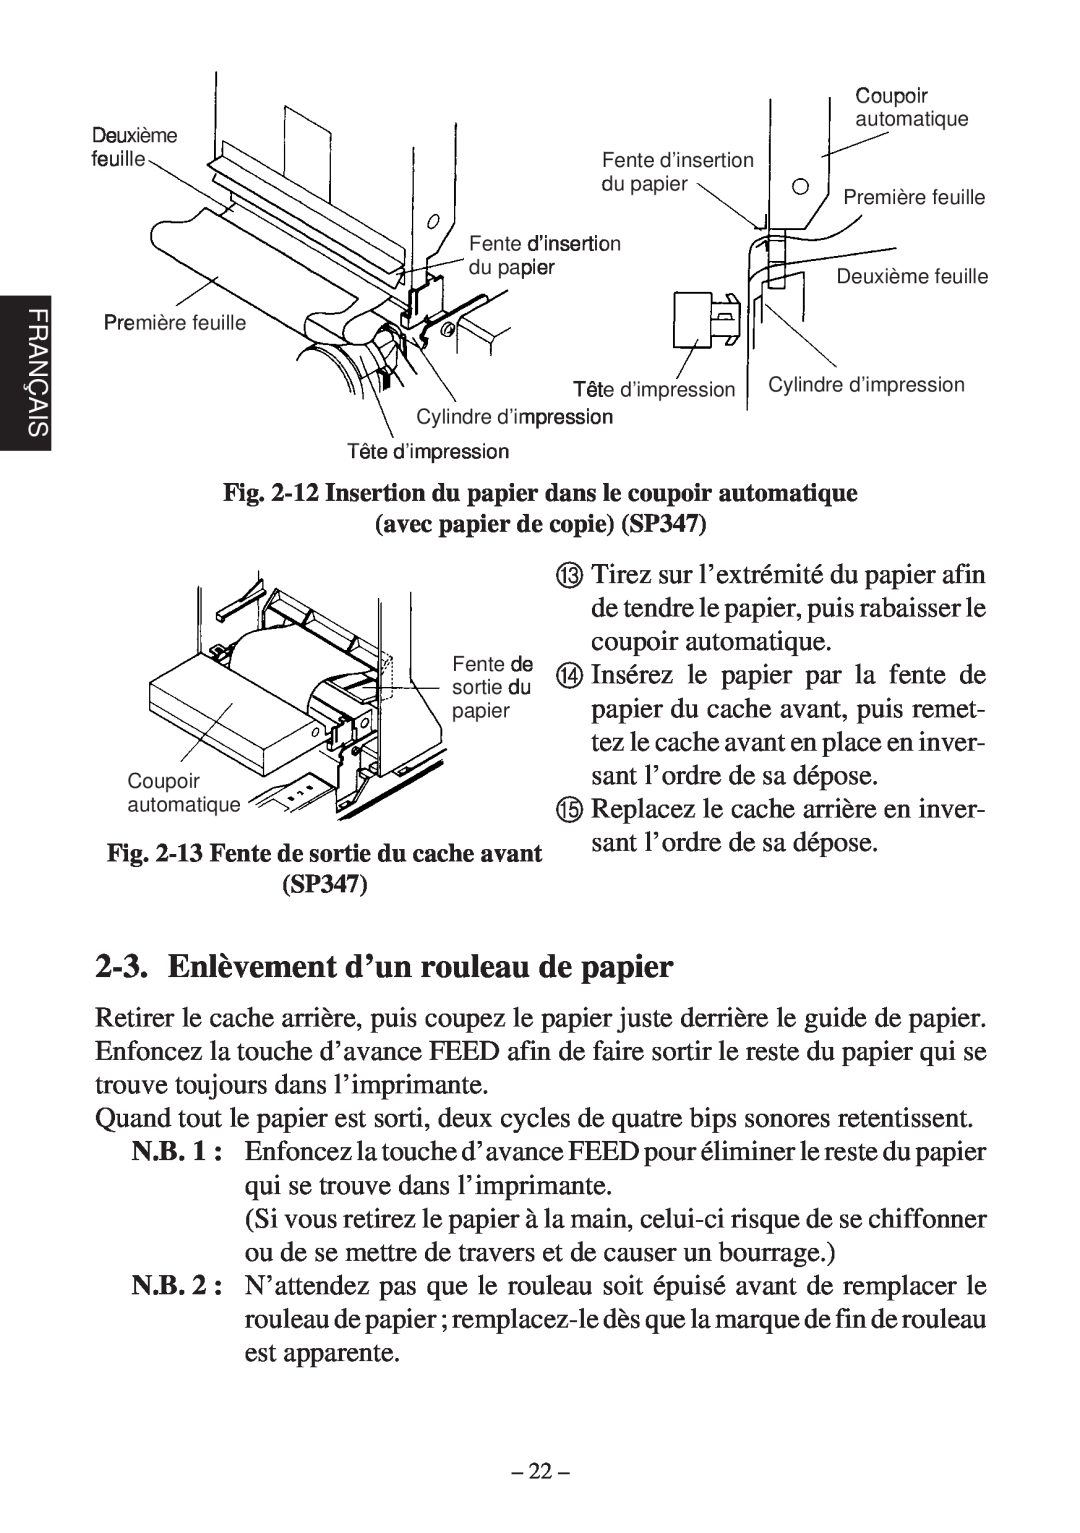 Star Micronics 347F user manual Enlèvement d’un rouleau de papier 